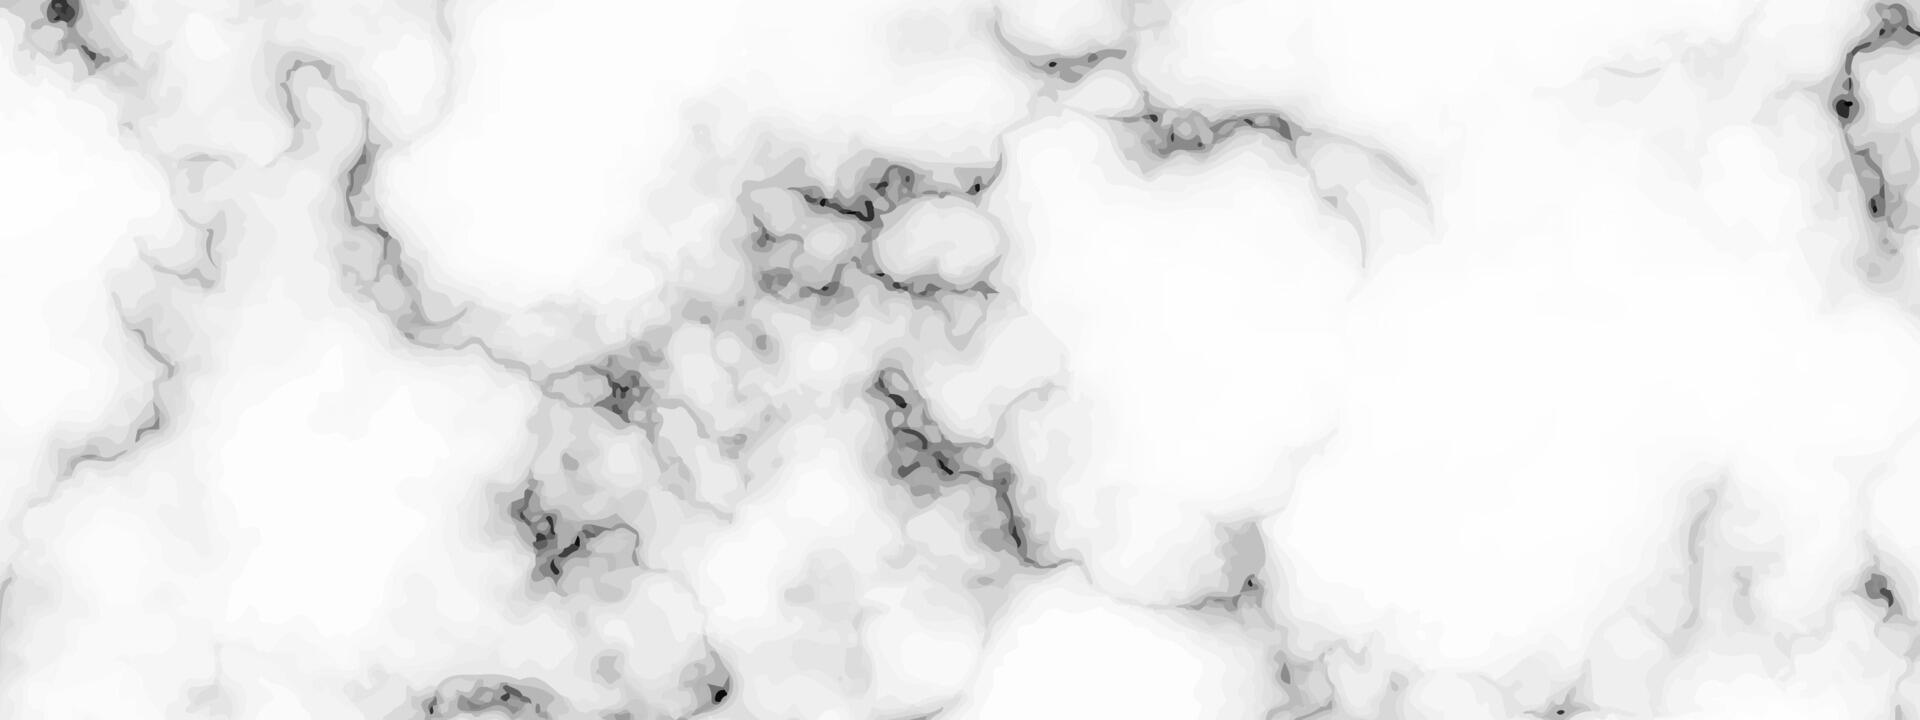 sfondo trama marmo bianco vettore